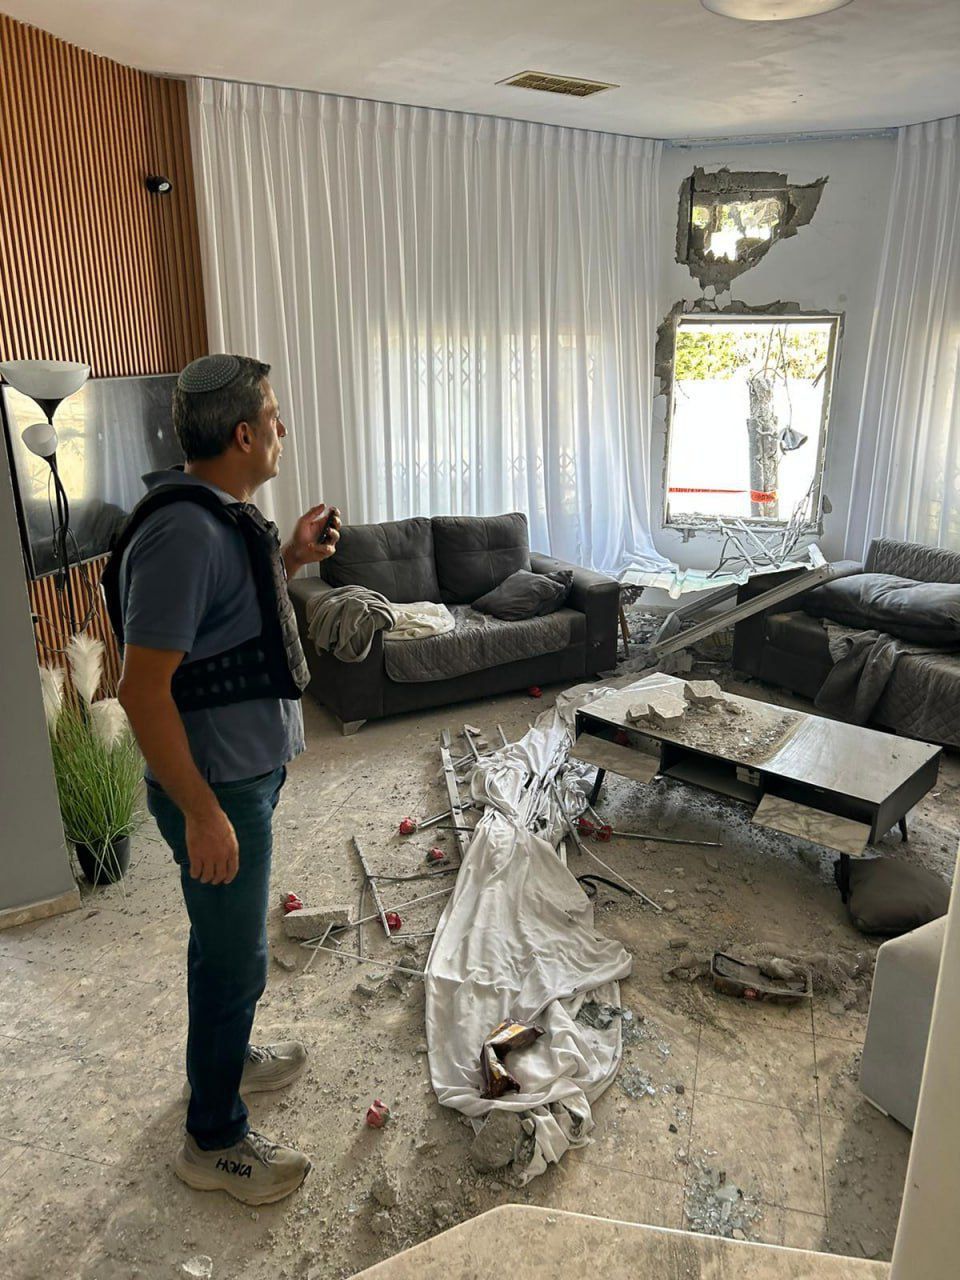 أضرار كبيرة في سديروت جراء الرشقة الصاروخية الأخيرة